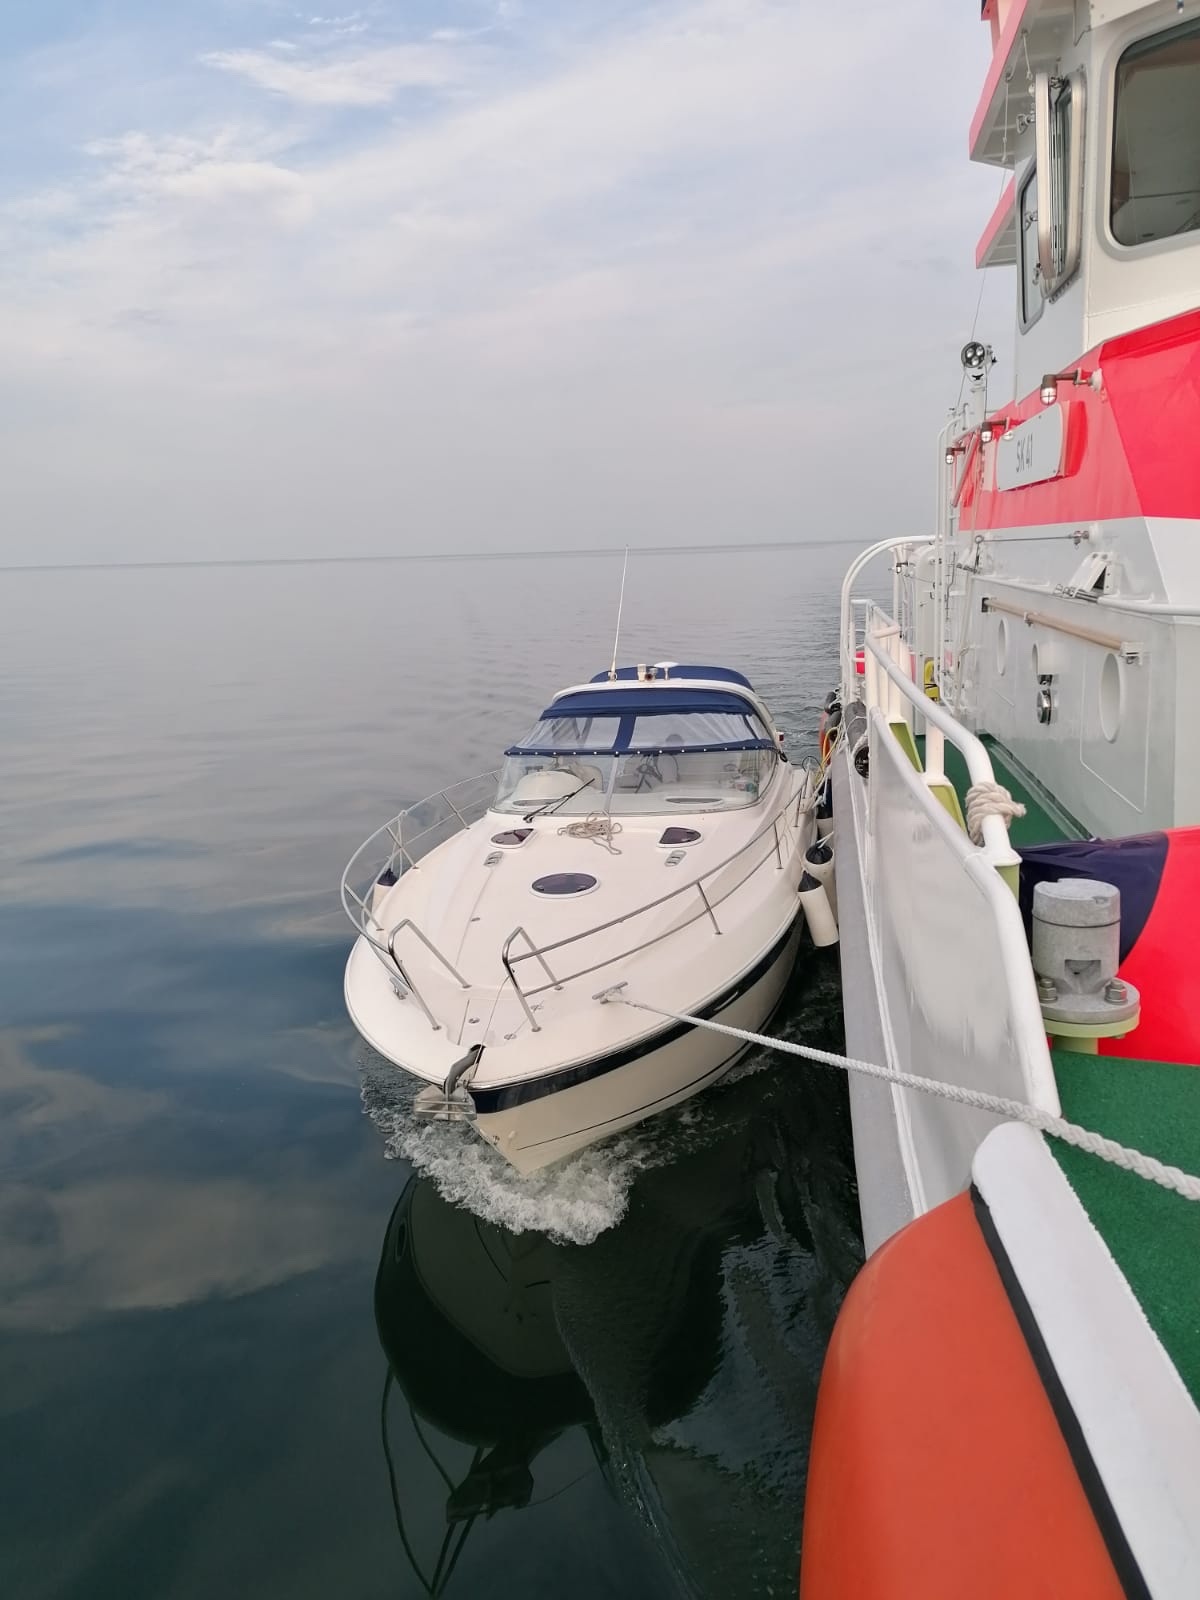 Wassereinbruch auf Motorboot: Seenotretter retten sechs Menschen aus Lebensgefahr